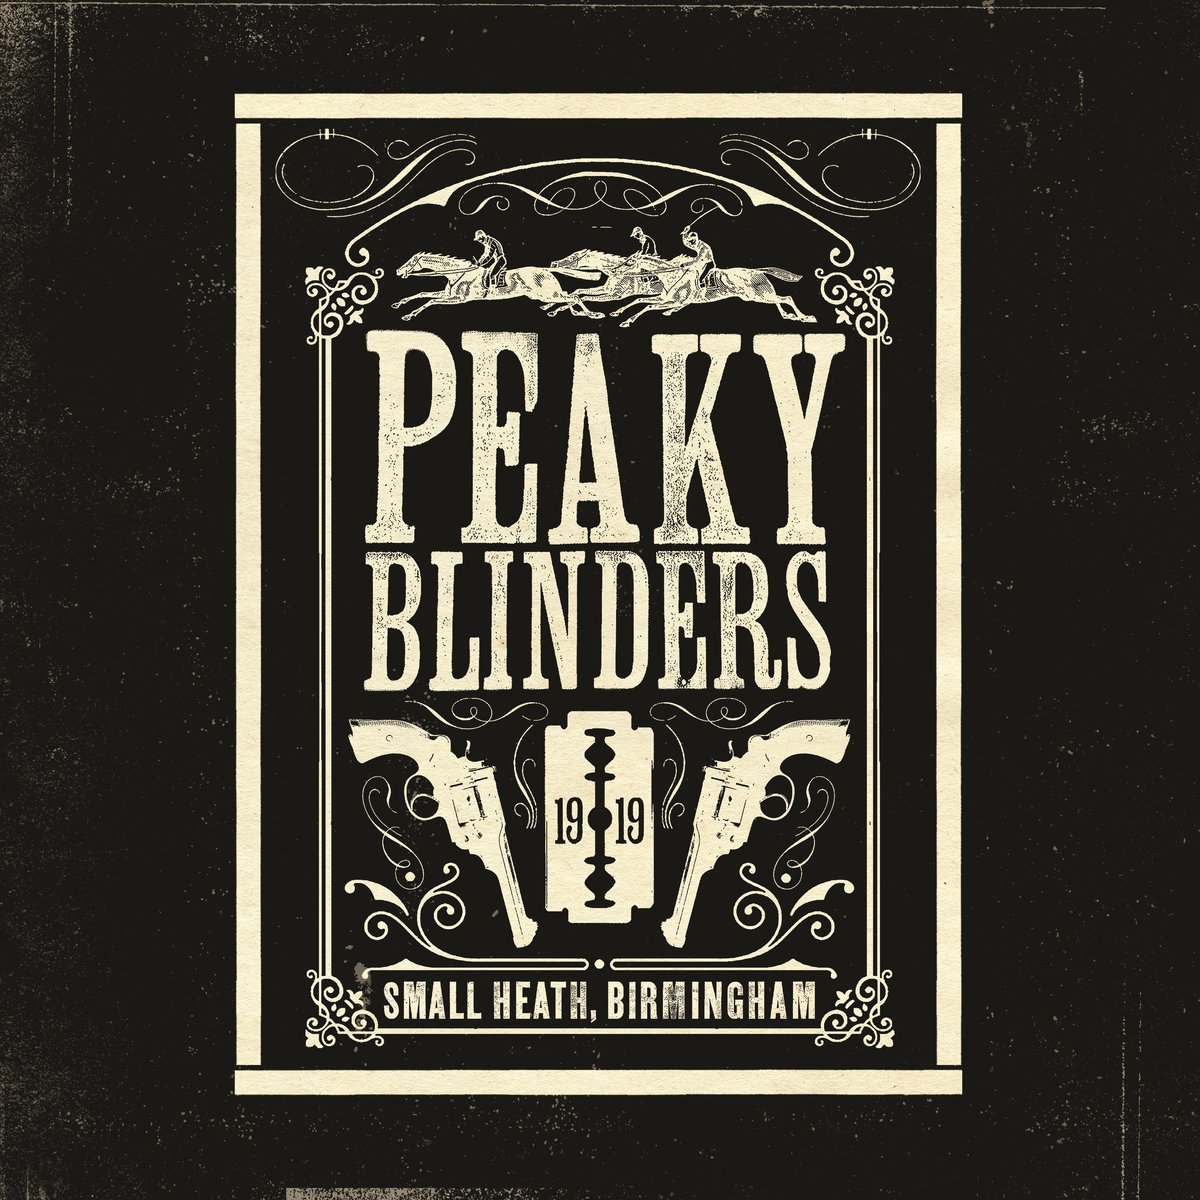 Peaky Blinders - OST